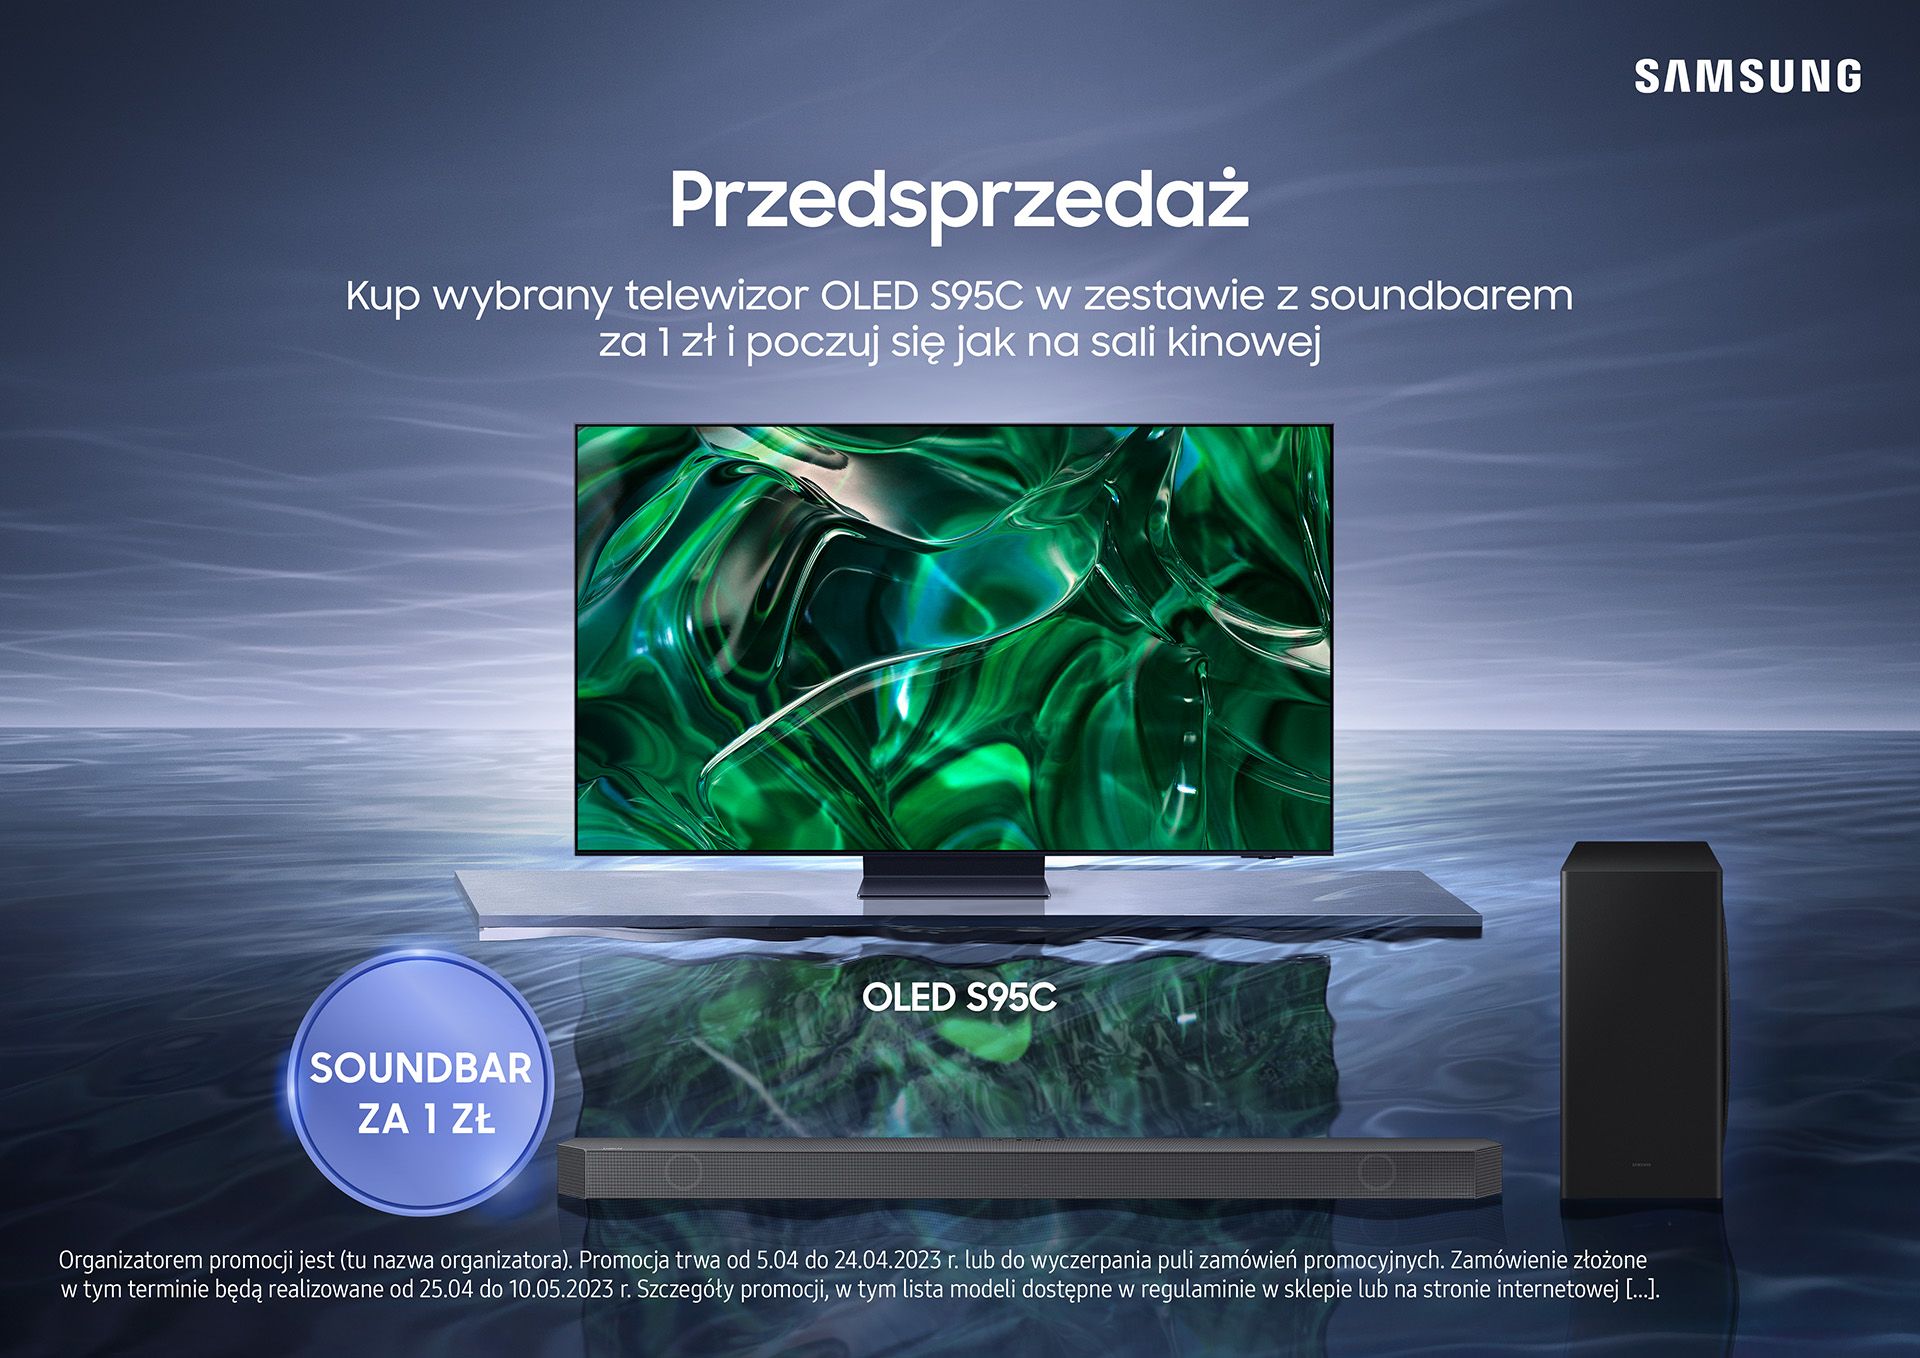 Przedsprzedaż telewizorów OLED S95C (źródło: Samsung)